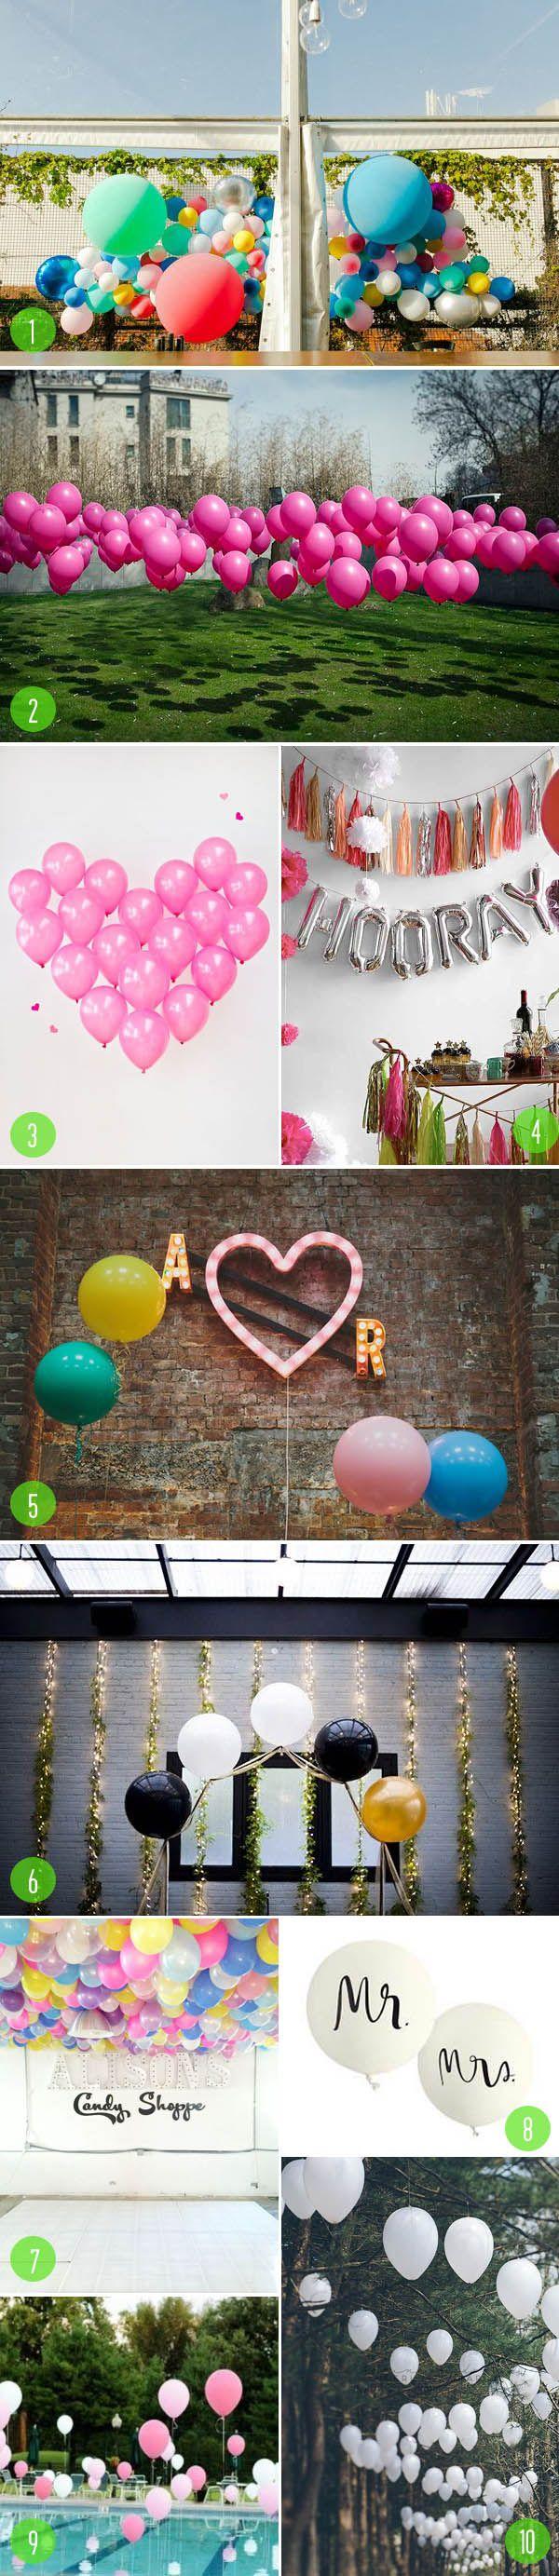 Wedding - Top 10: Balloons